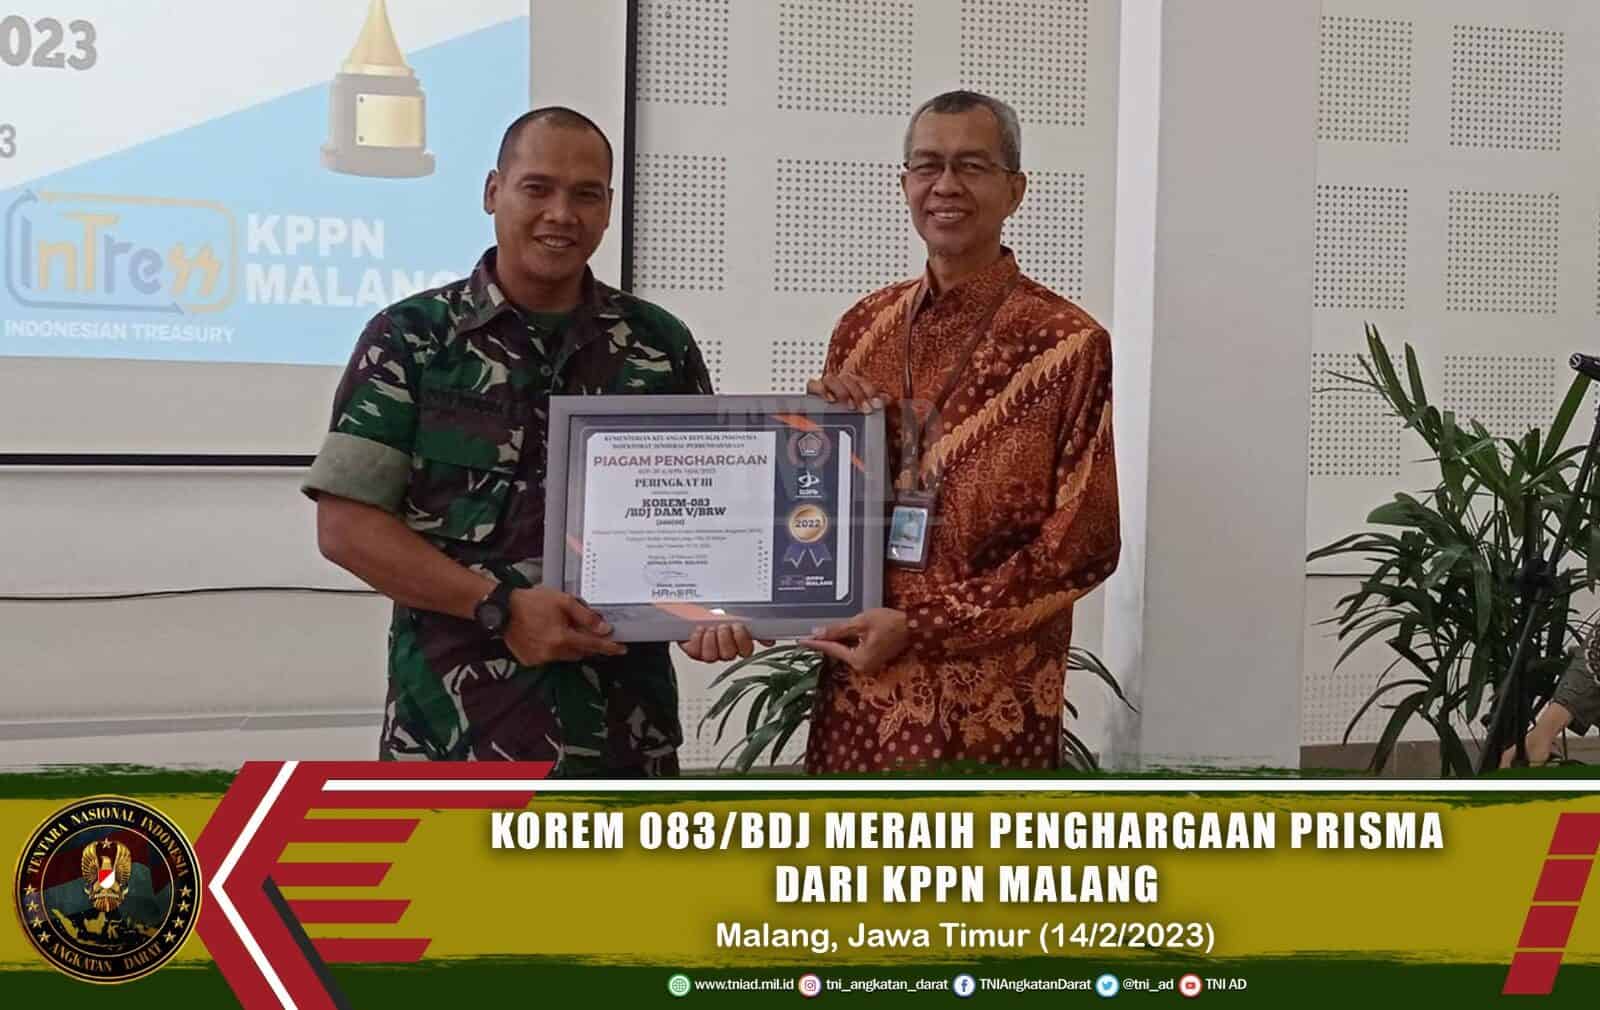 Korem 083/Bdj Meraih Penghargaan Prisma dari KPPN Malang